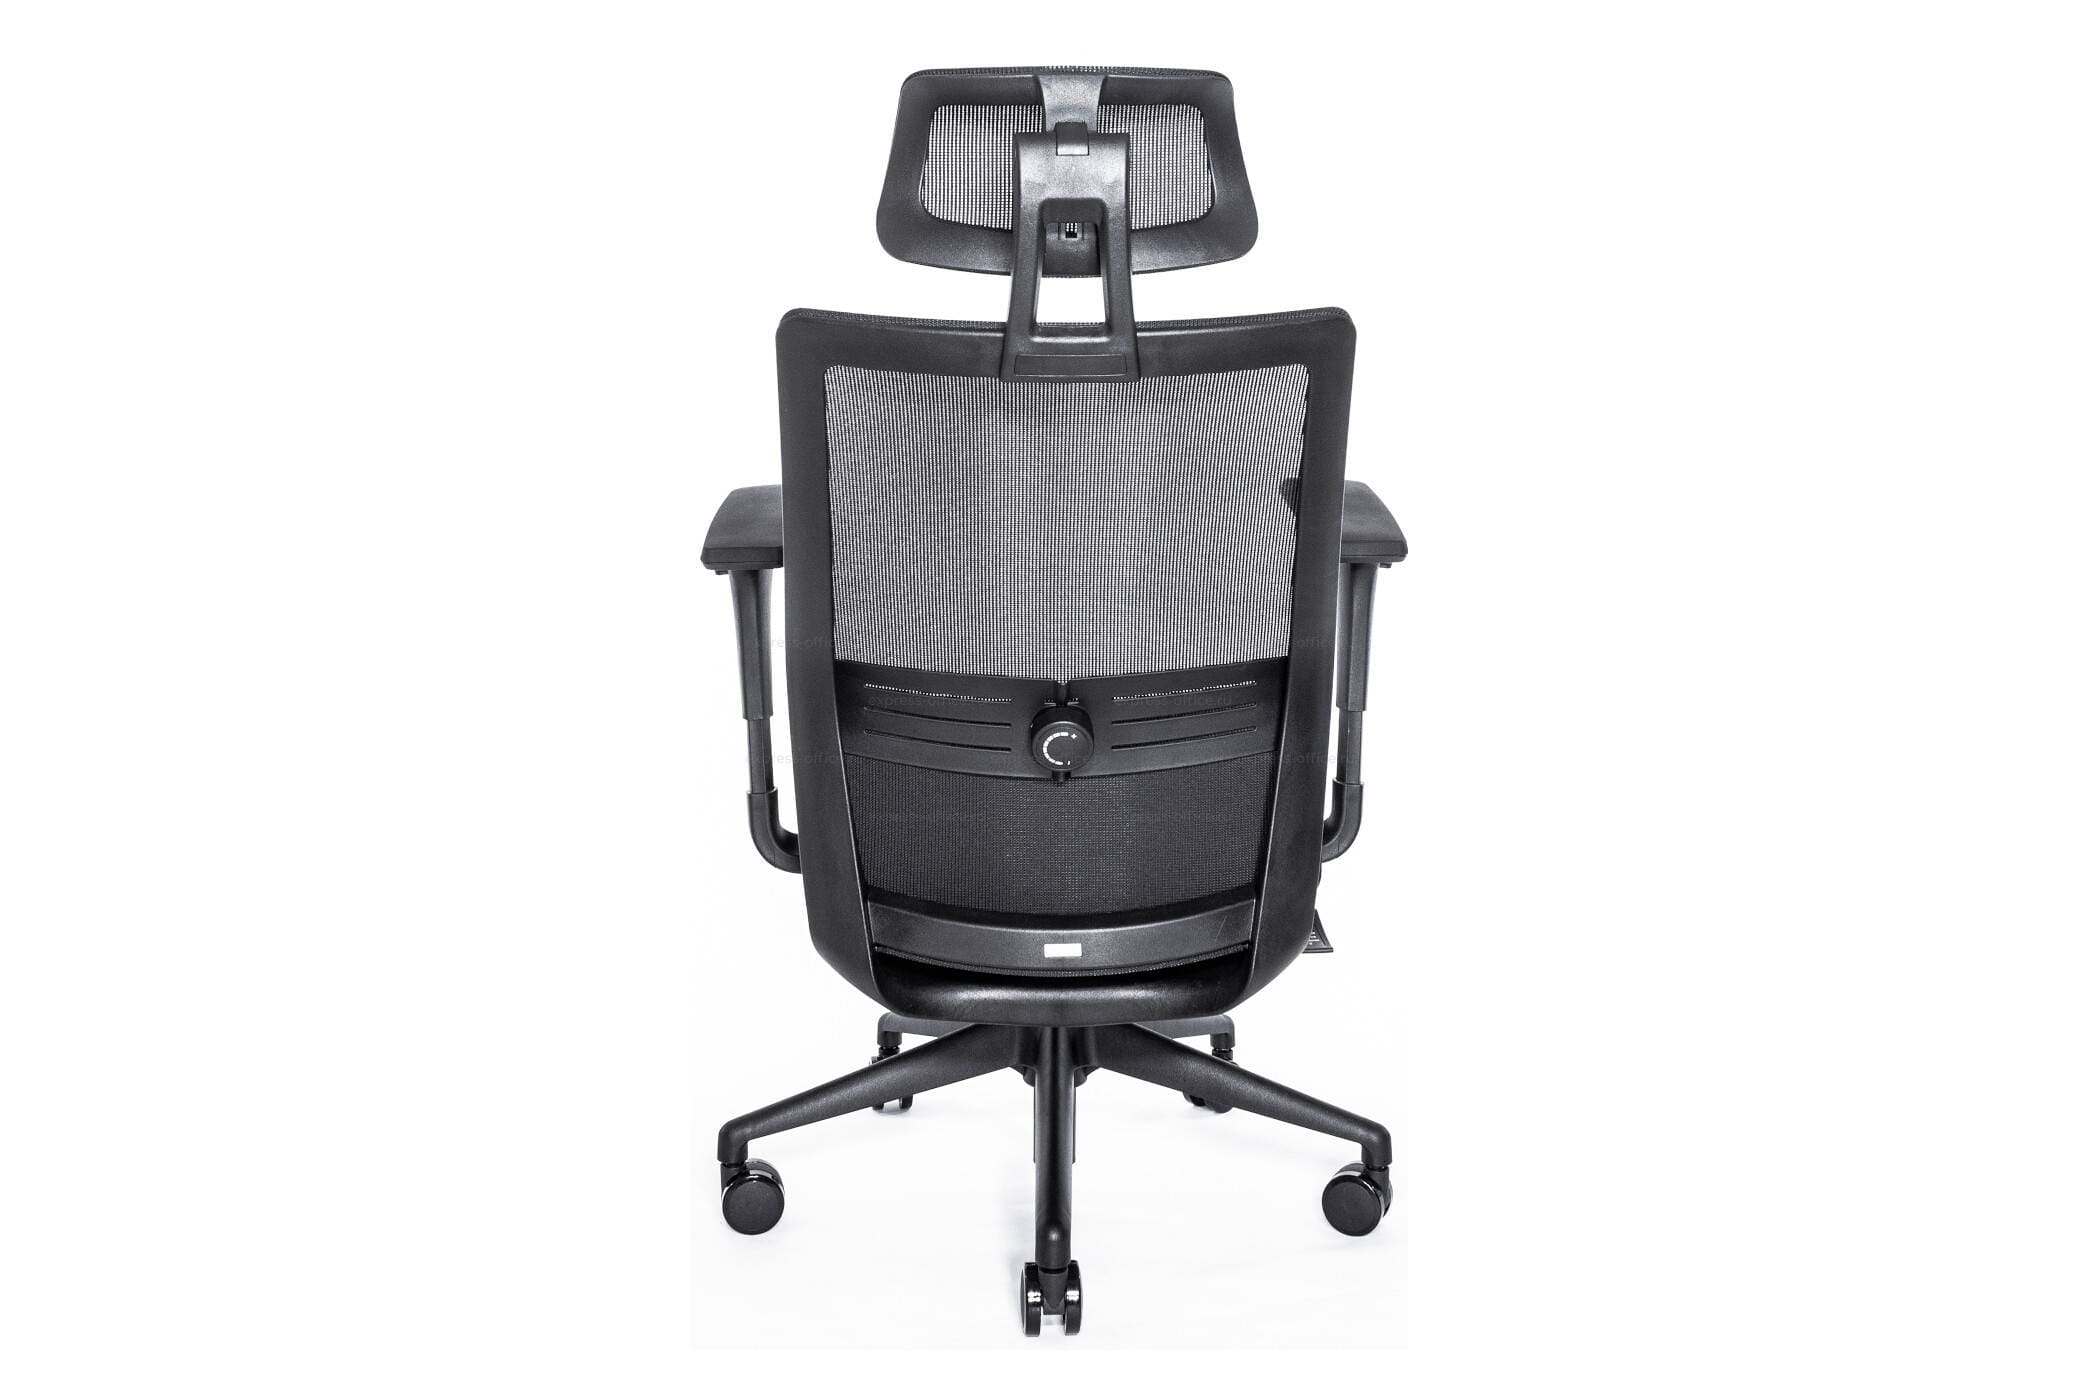 Эргономичное кресло Falto SOUL SOL 01KAL/BK-BK 2D (каркас черный, спинка сетка черная, сиденье ткань черная)